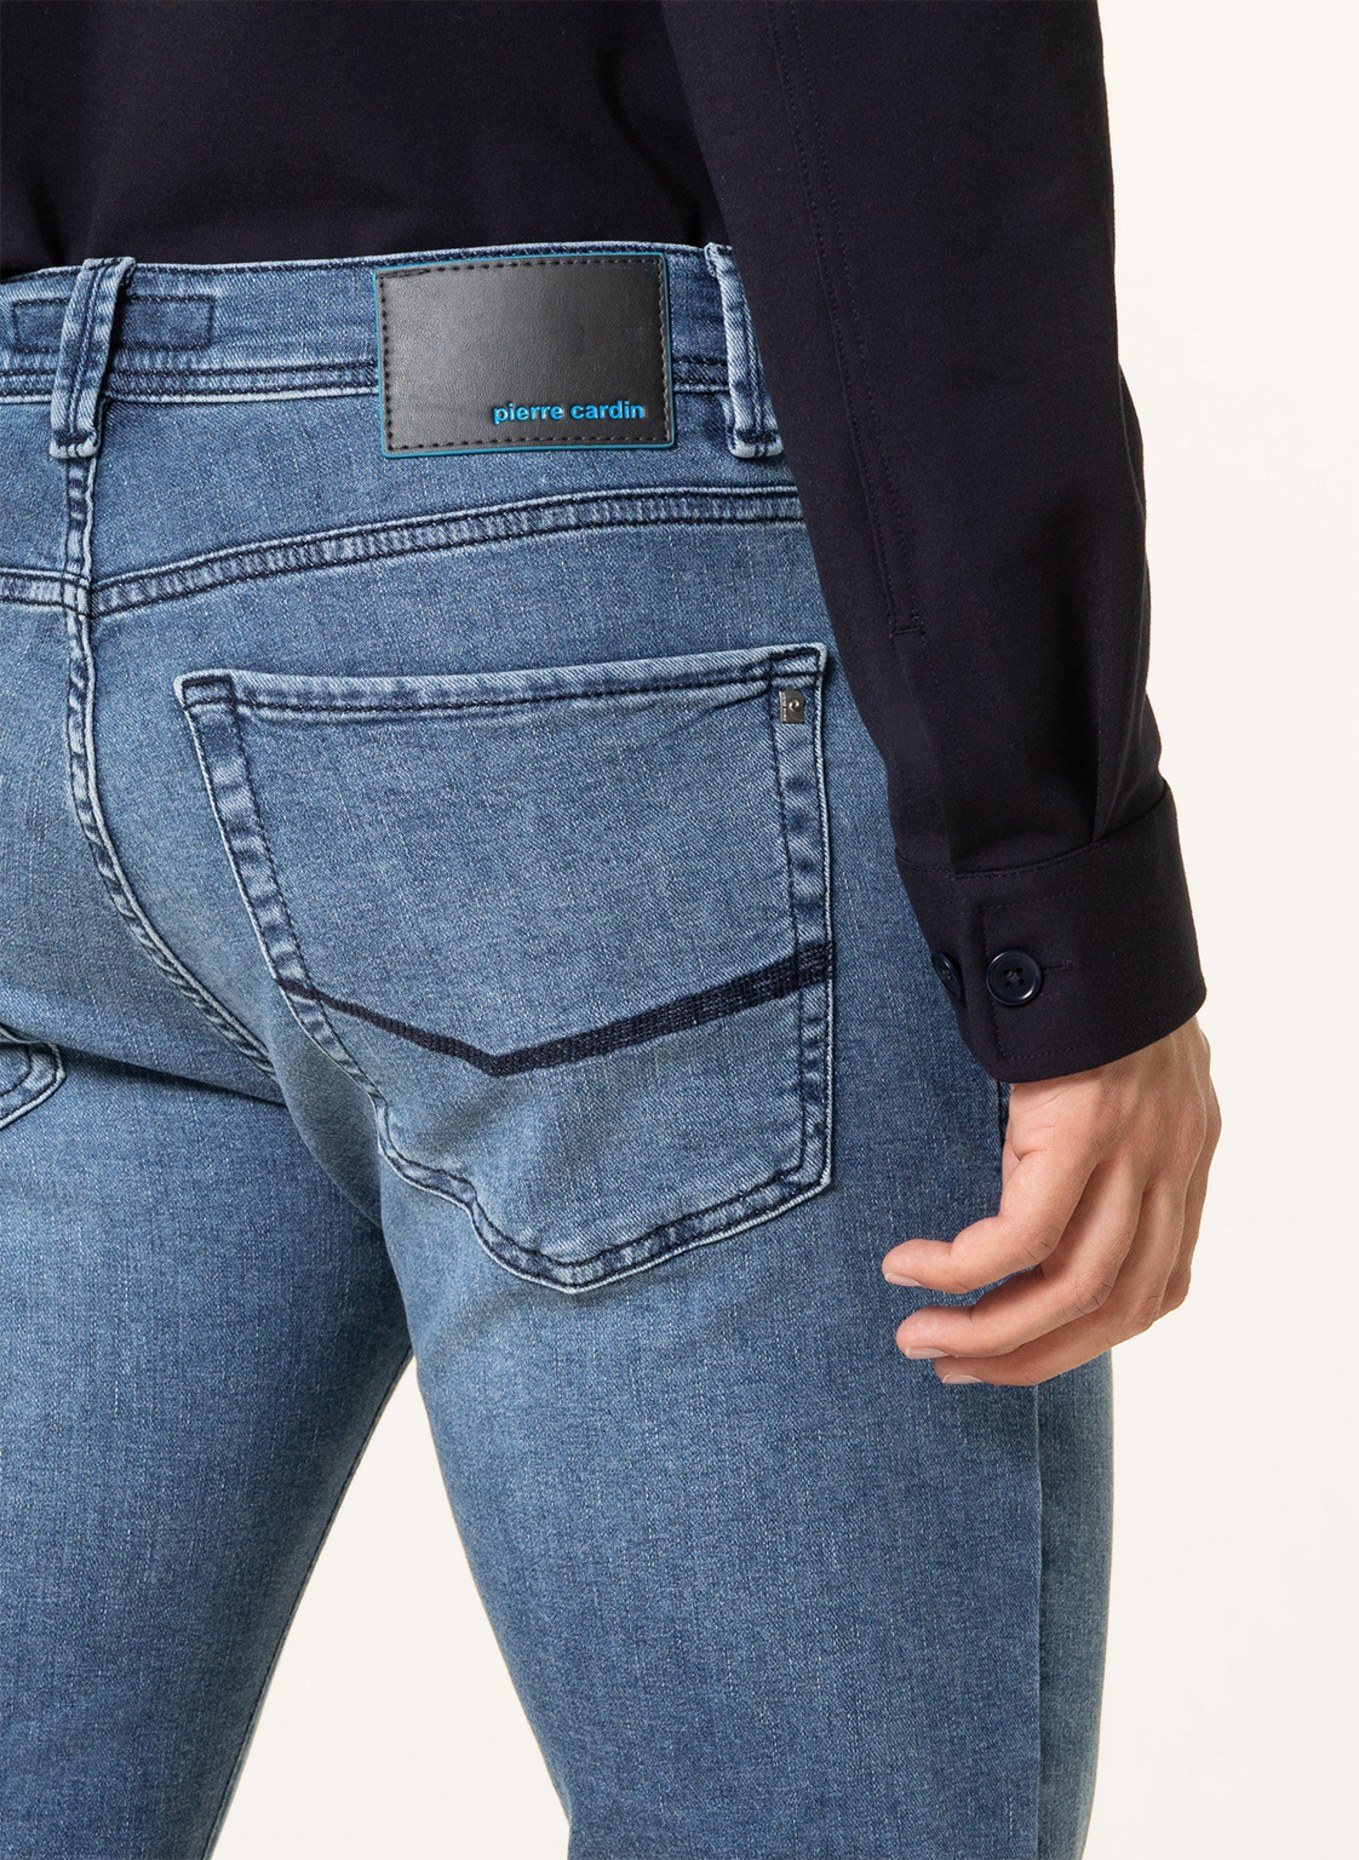 pierre cardin Jeans LYON Slim Fit, Farbe: 6824 blue used buffies (Bild 5)